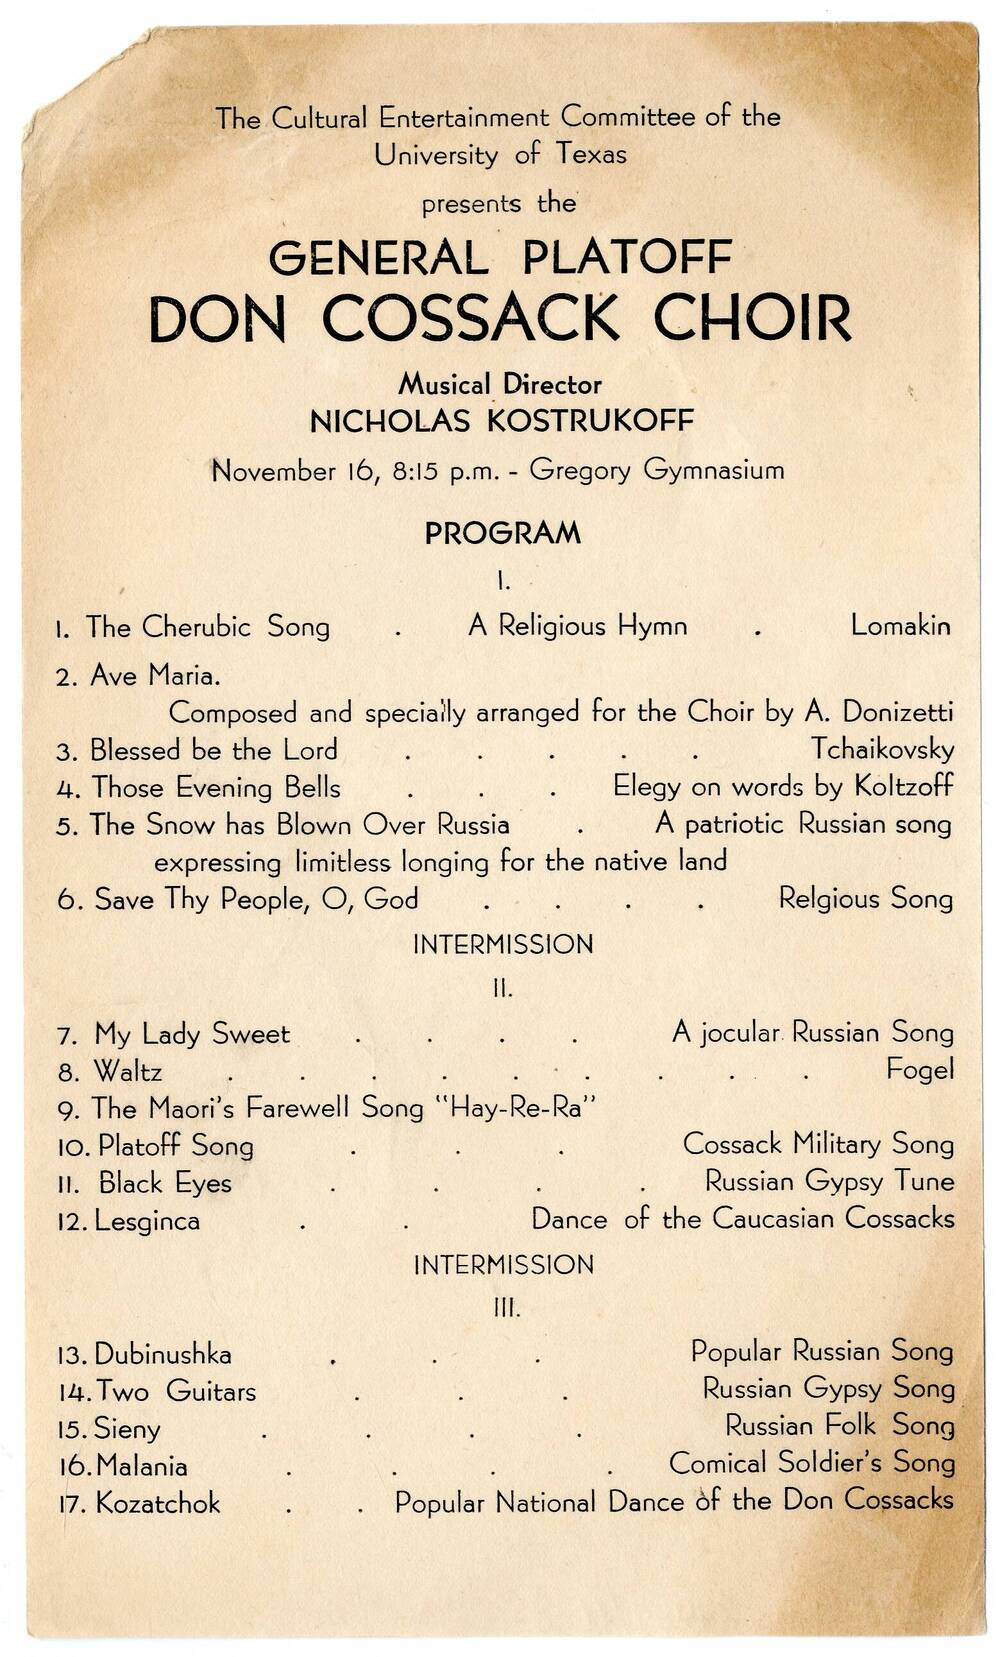 Программа концерта хора донских казаков имени М.И. Платова General Platoff. Don Cossack Choir в Америке.